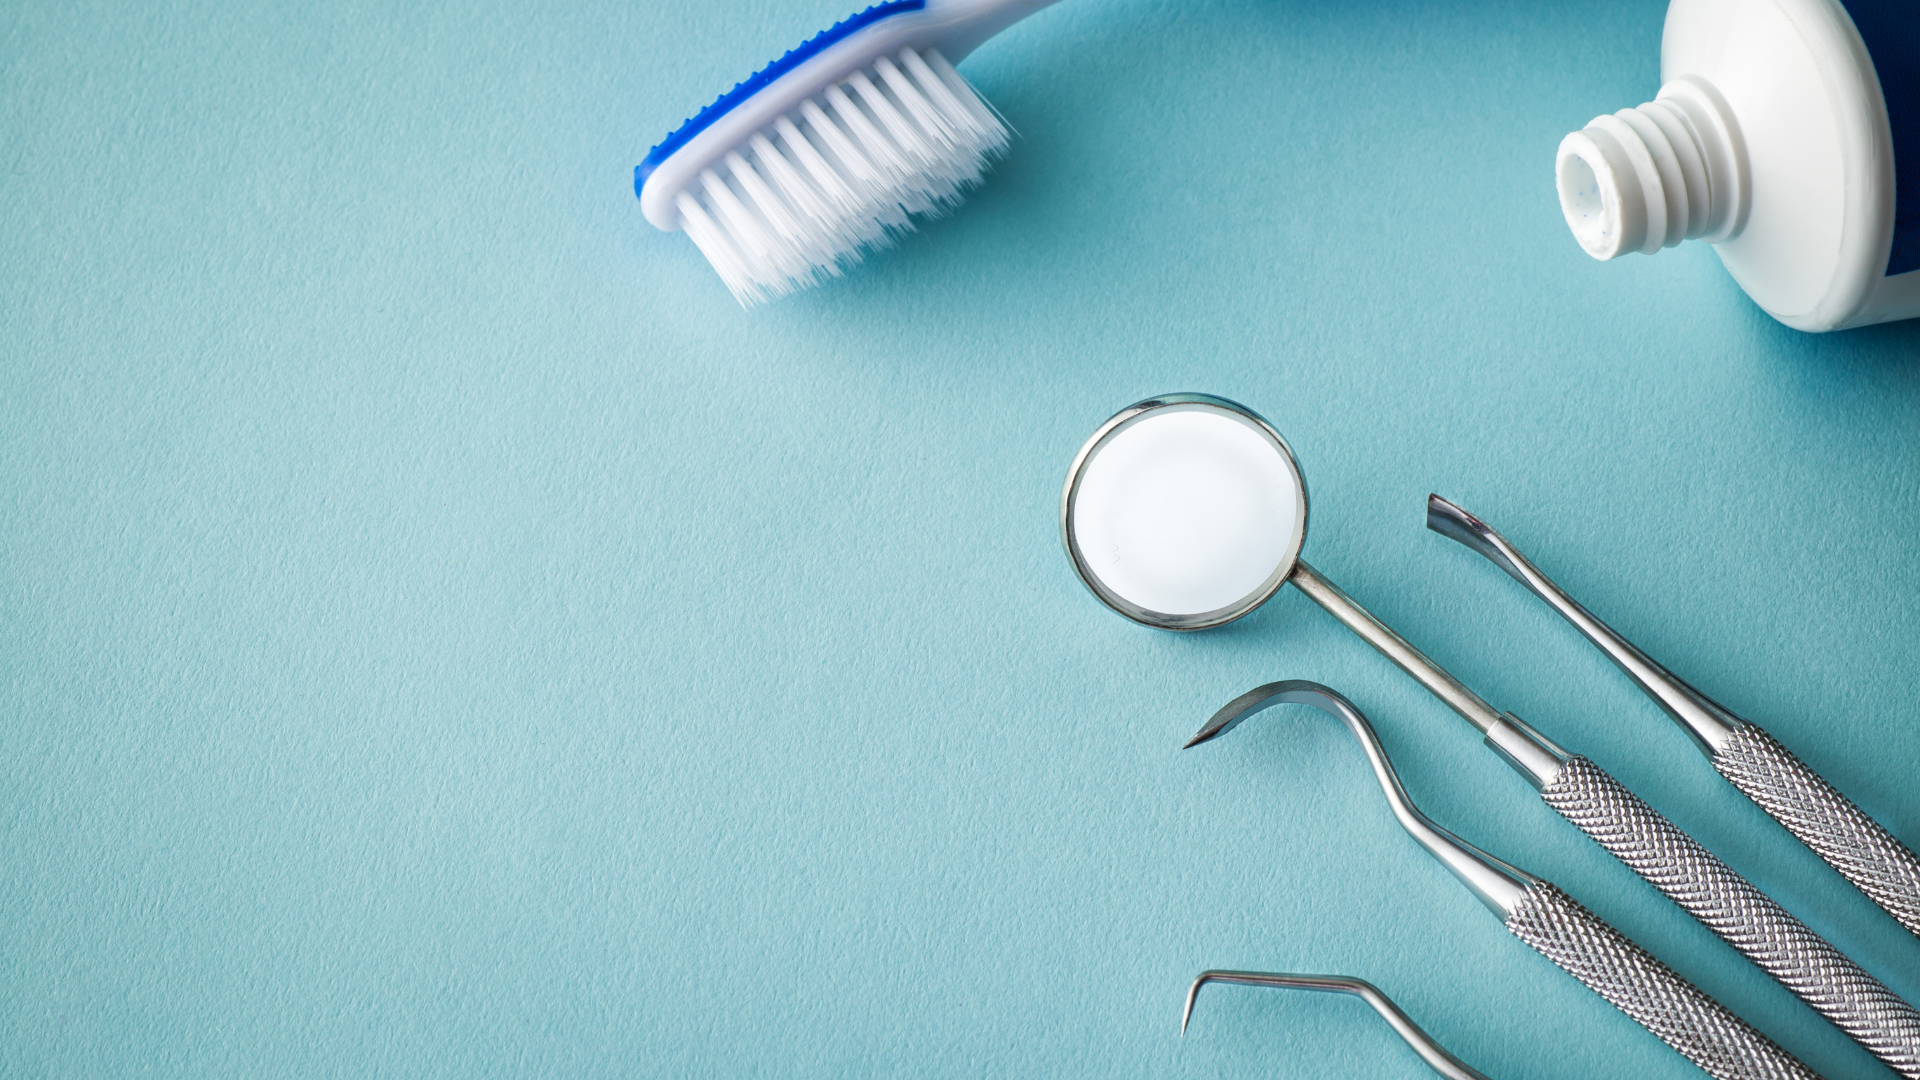 Profilaktyka stomatologiczna – jakie badania wykonać?